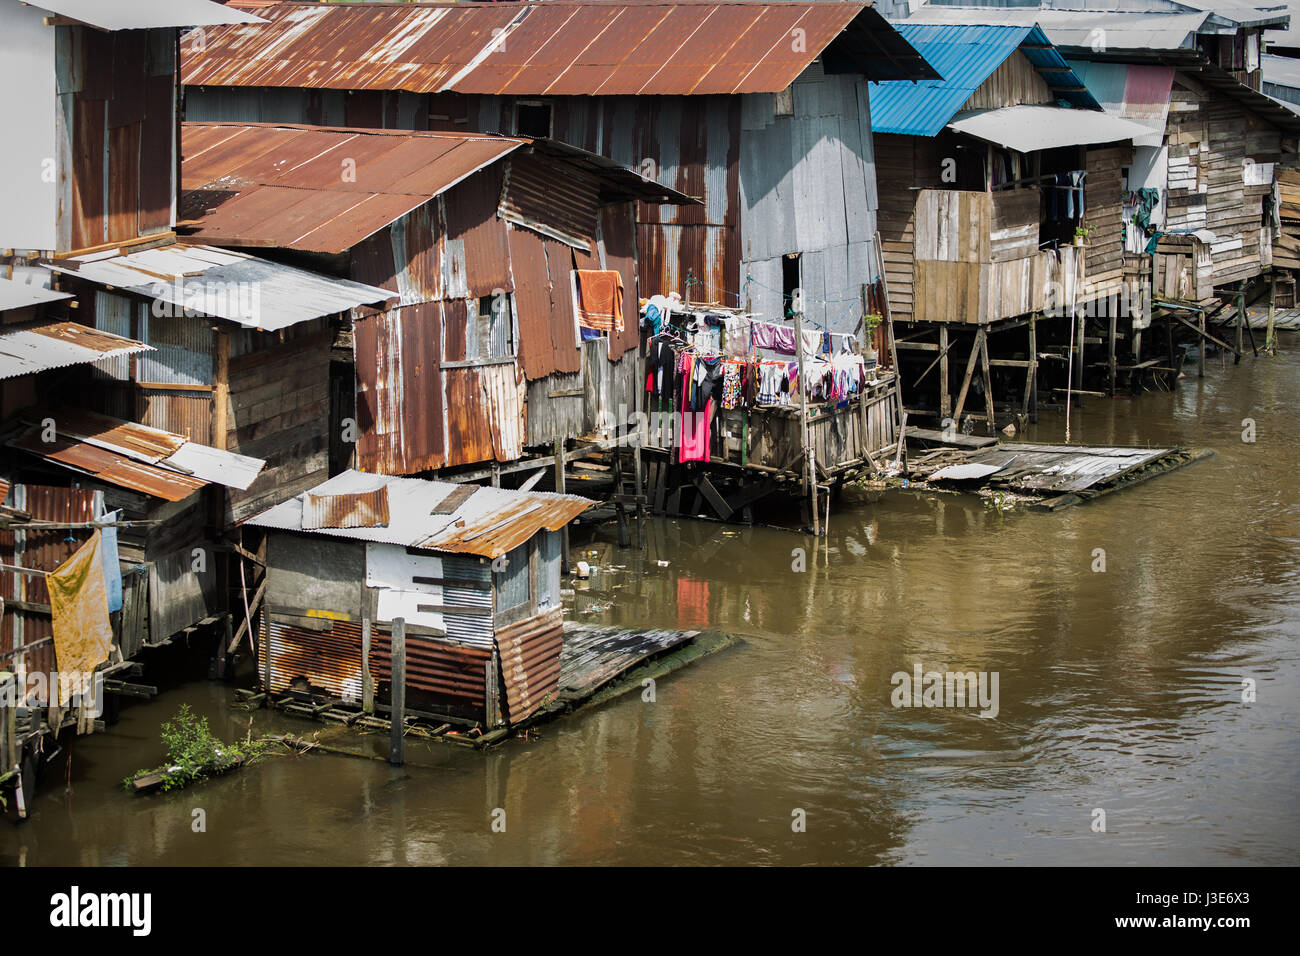 Grundlegende einfache Behausungen in Form von hölzernen Hütten oder Häusern, die den riverine Kalimantan am Flussufer in indonesischen Borneo Einwohner hat. Stockfoto